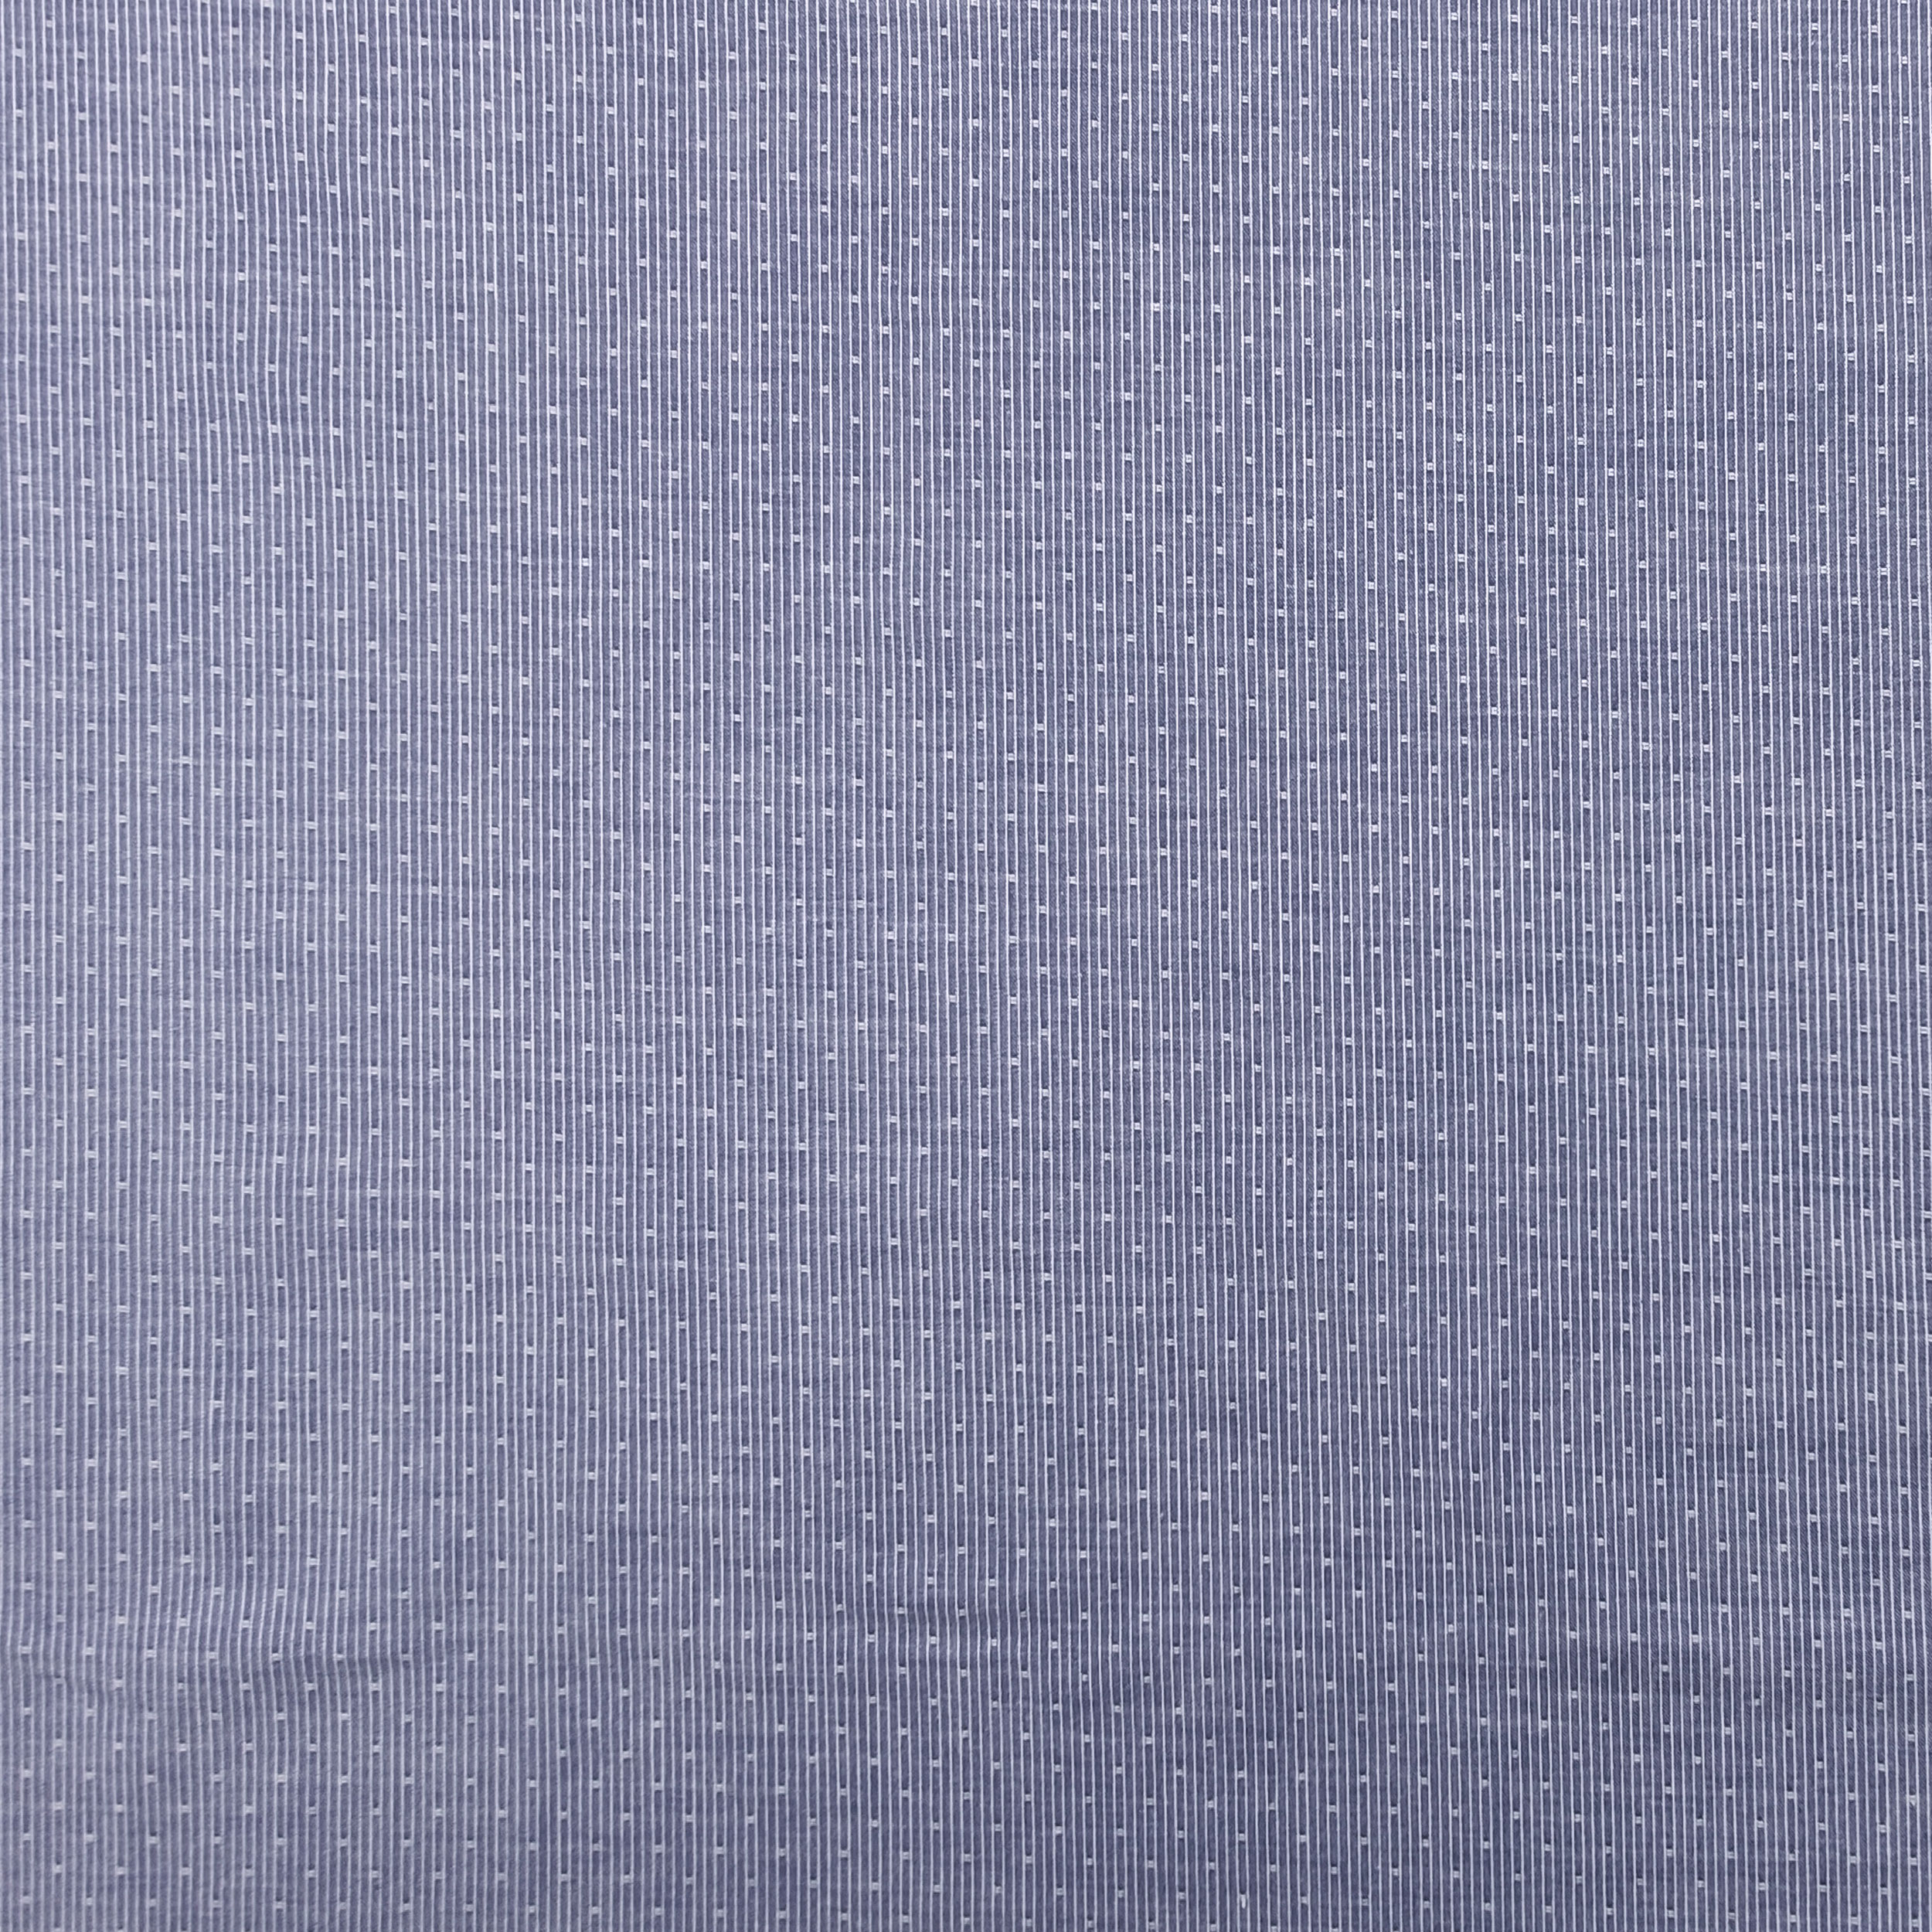 tessuto cotone microfantasia per camicia